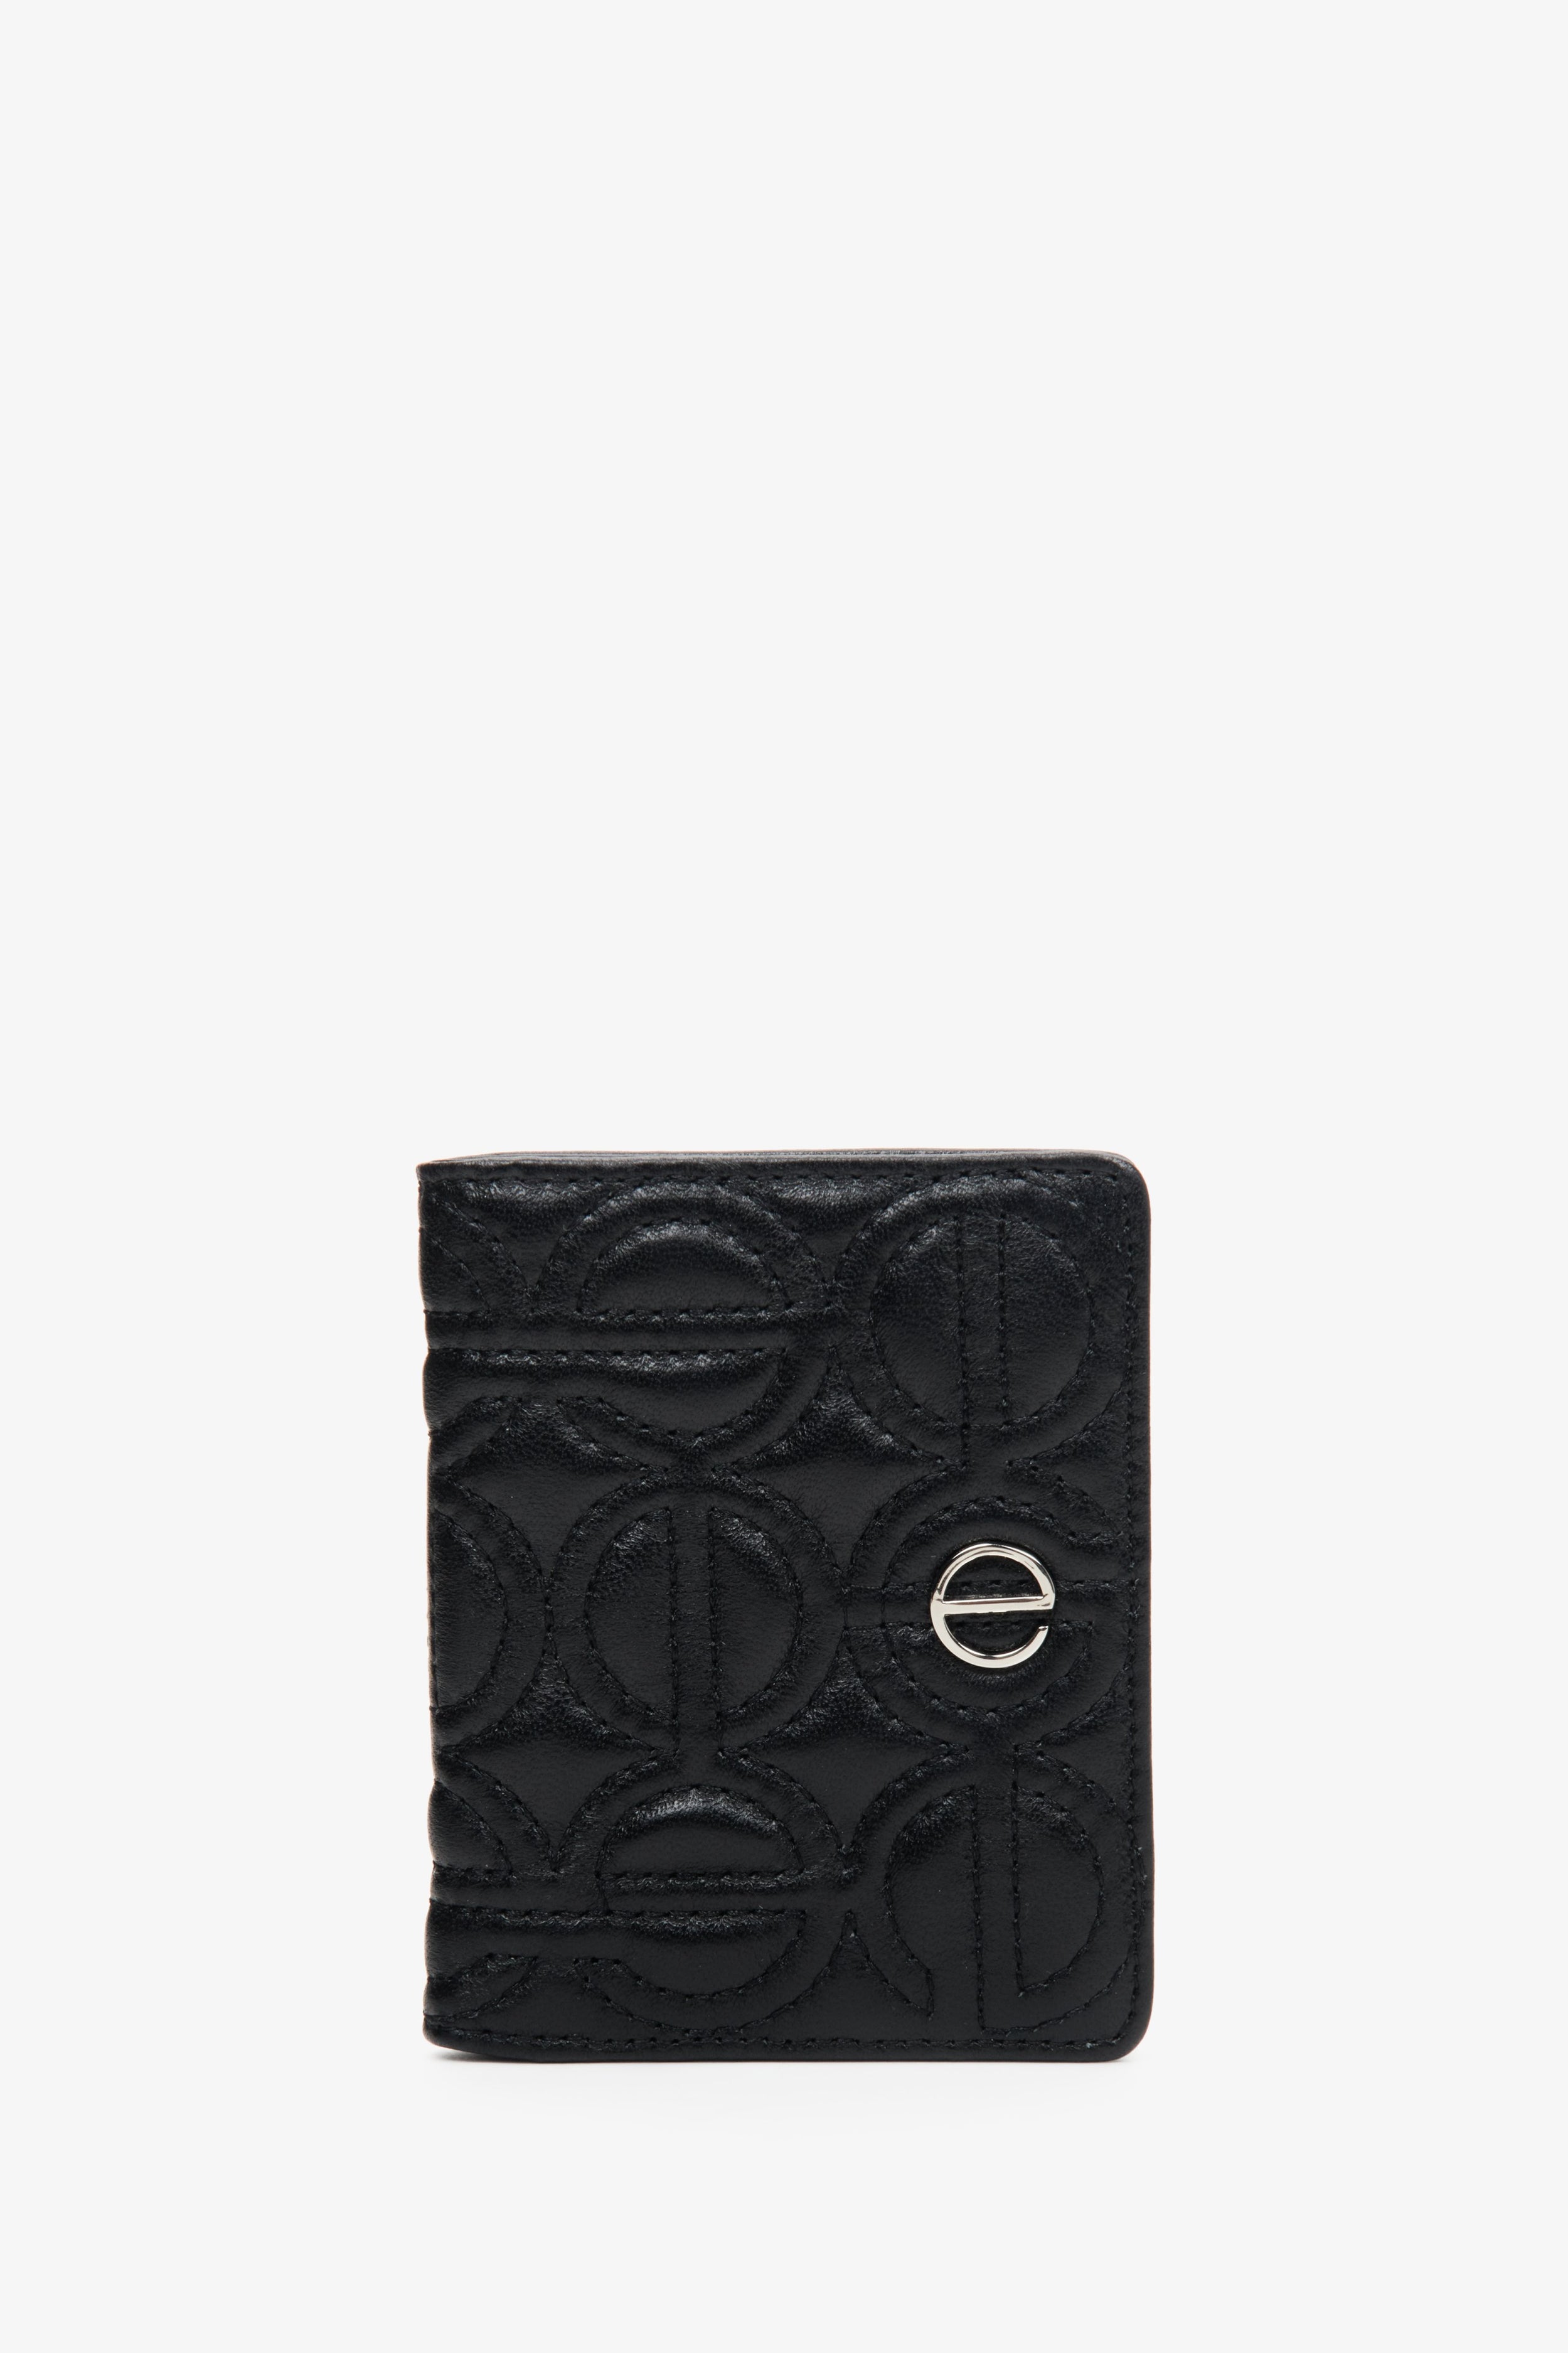 Estro: Mały skórzany portfel damski w kolorze czarnym ze srebrnymi okuciami